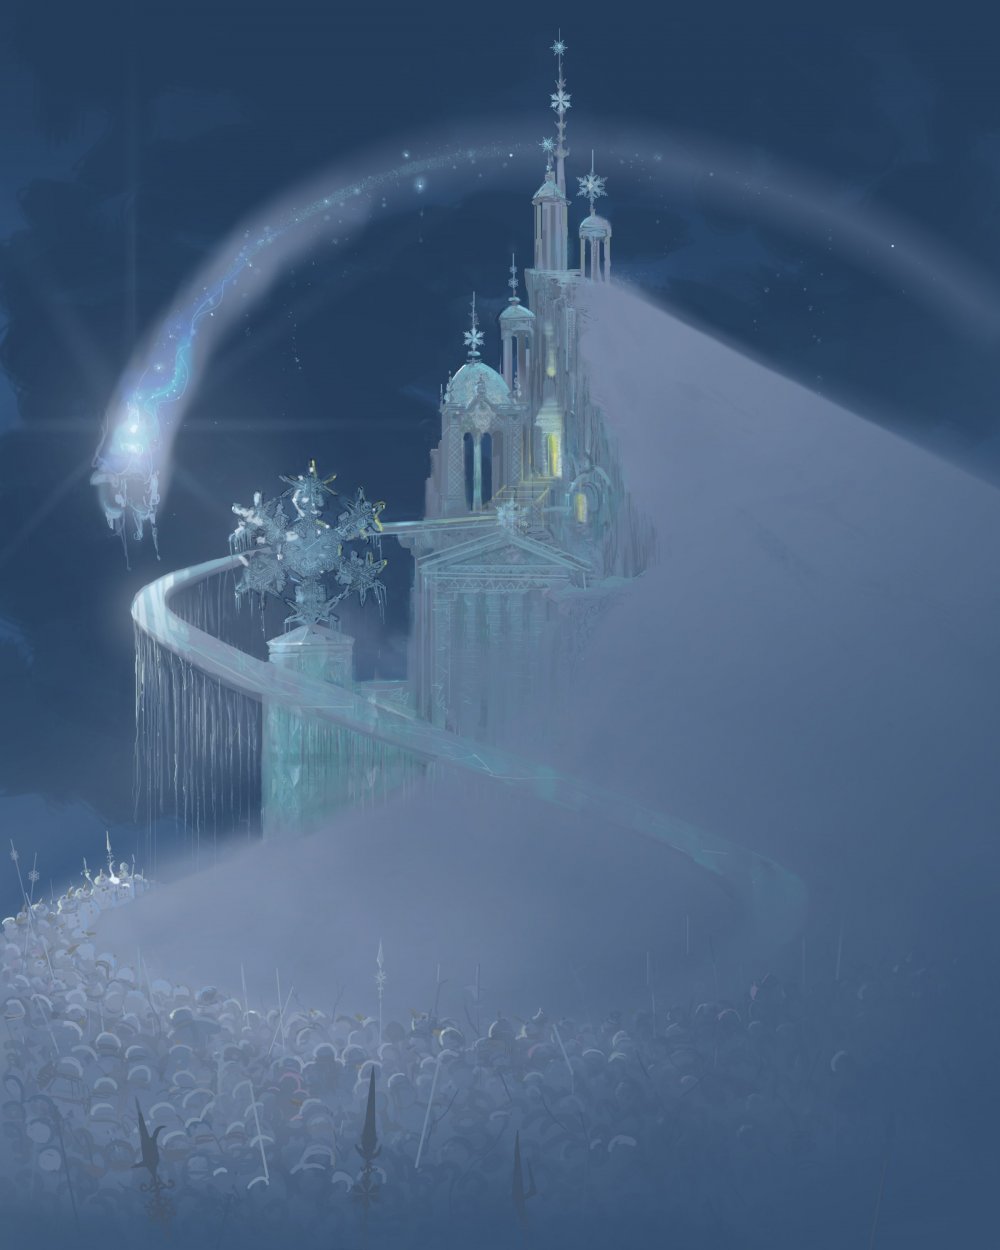 Замок снежной королевы (Ice Queen's Castle)